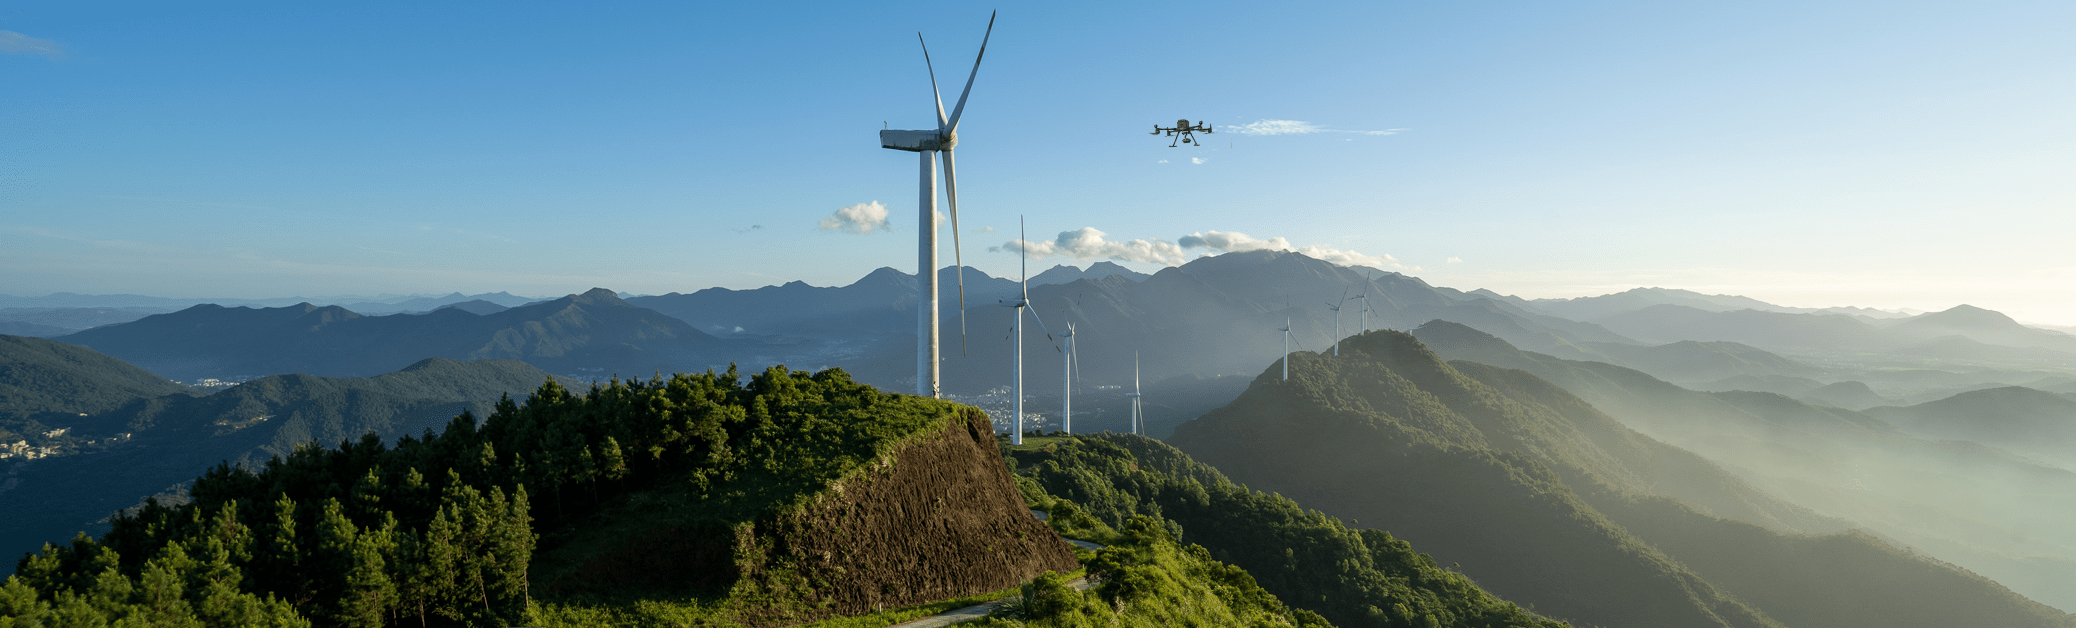 Применение дронов DJI для инспекции ветрогенераторов - генераторыэнергии